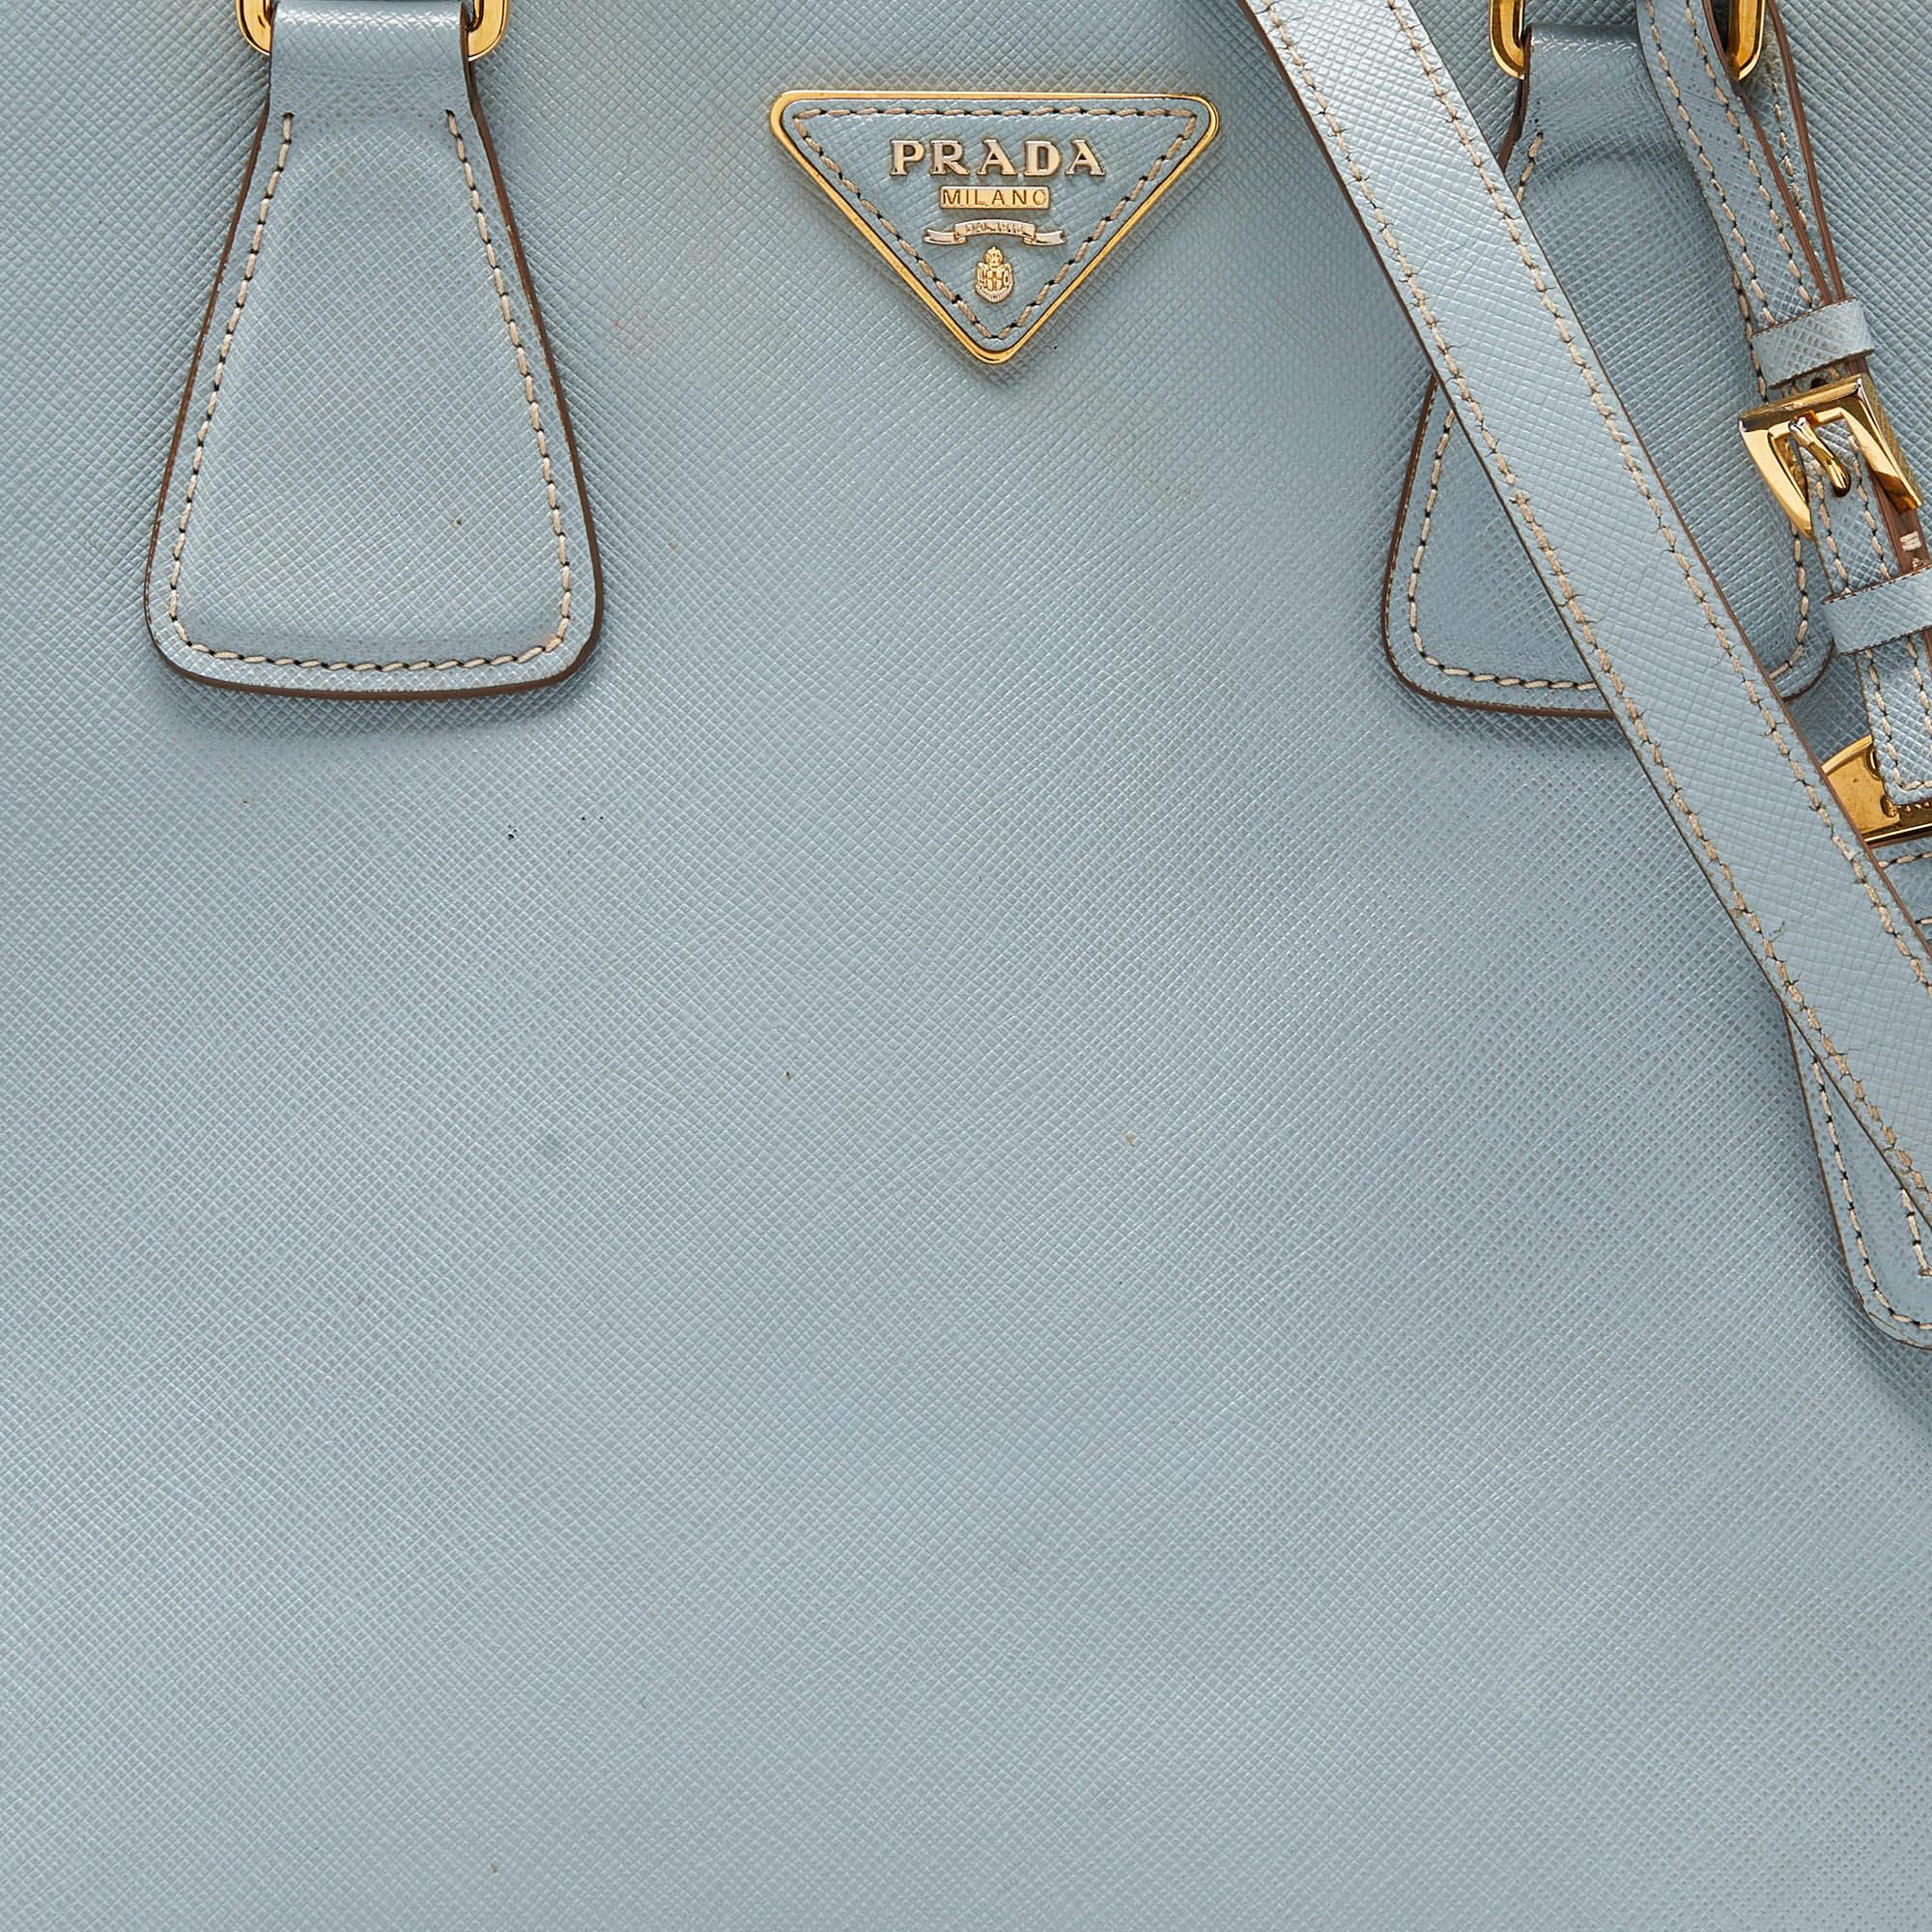 Prada Blue/White Saffiano Lux Leather Open Tote For Sale 6